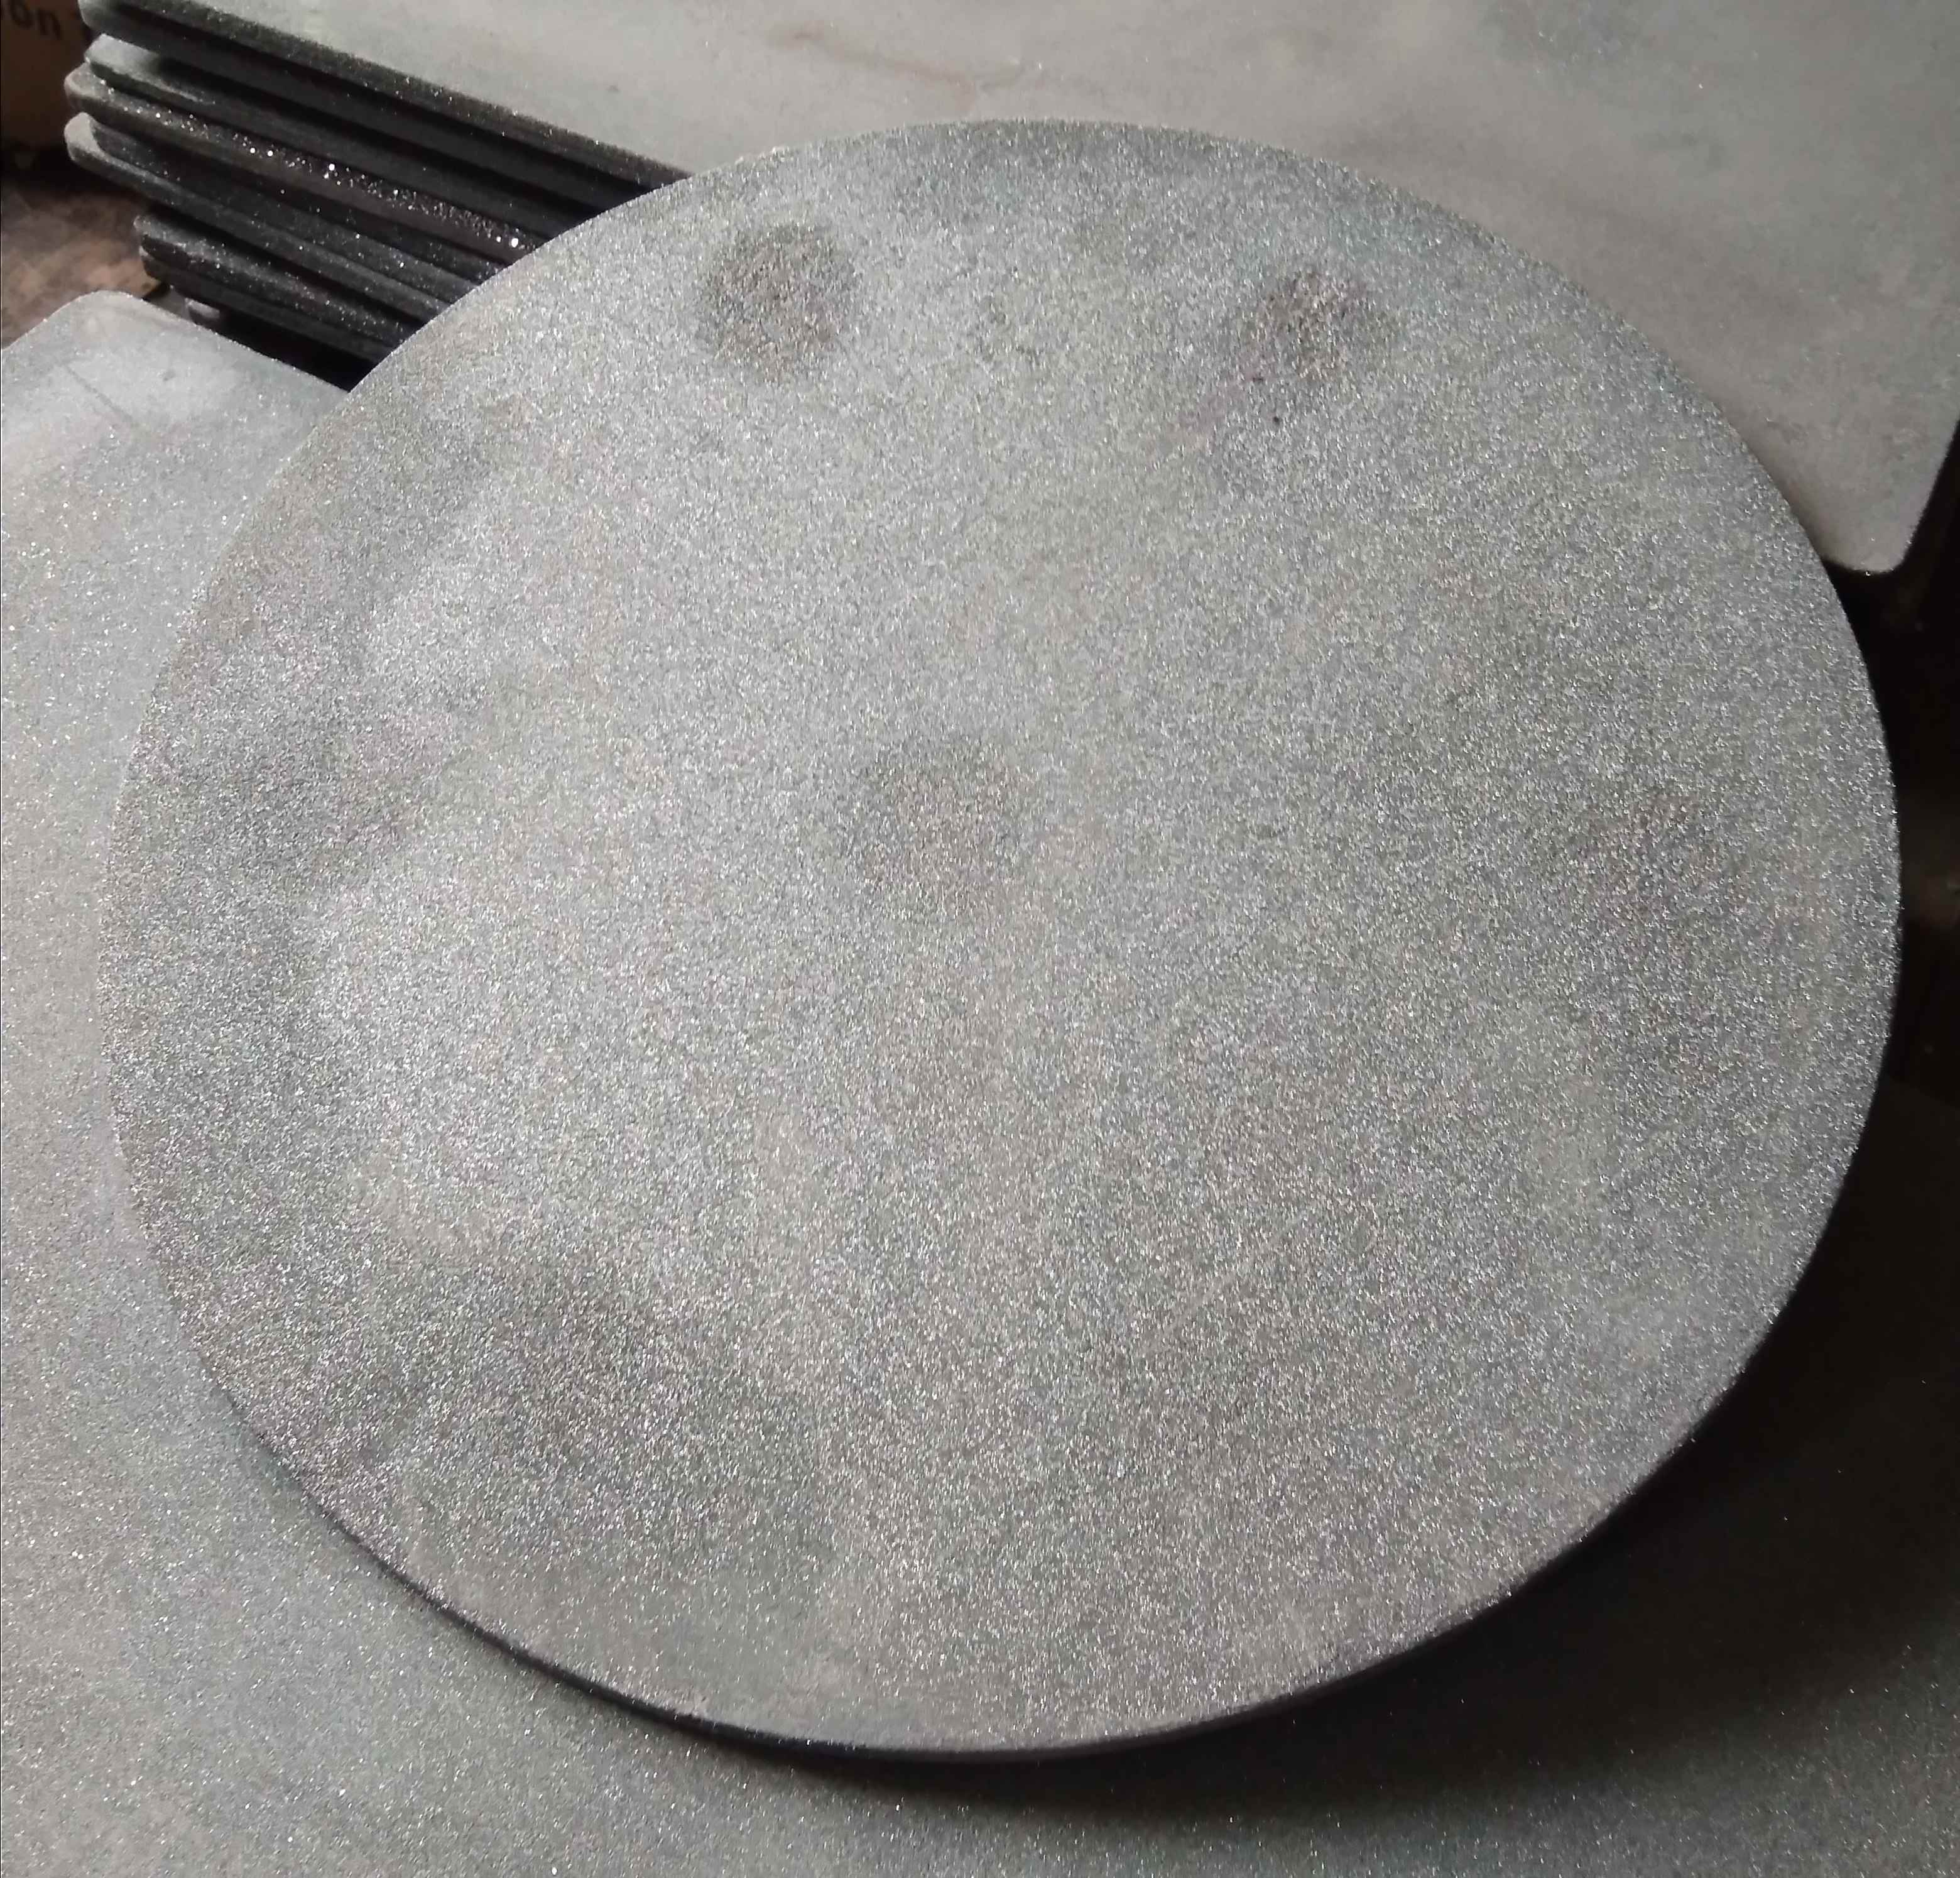 RSiC kiln shelf, recrystallized silicon carbide plate,ReSiC batt, slab, setter